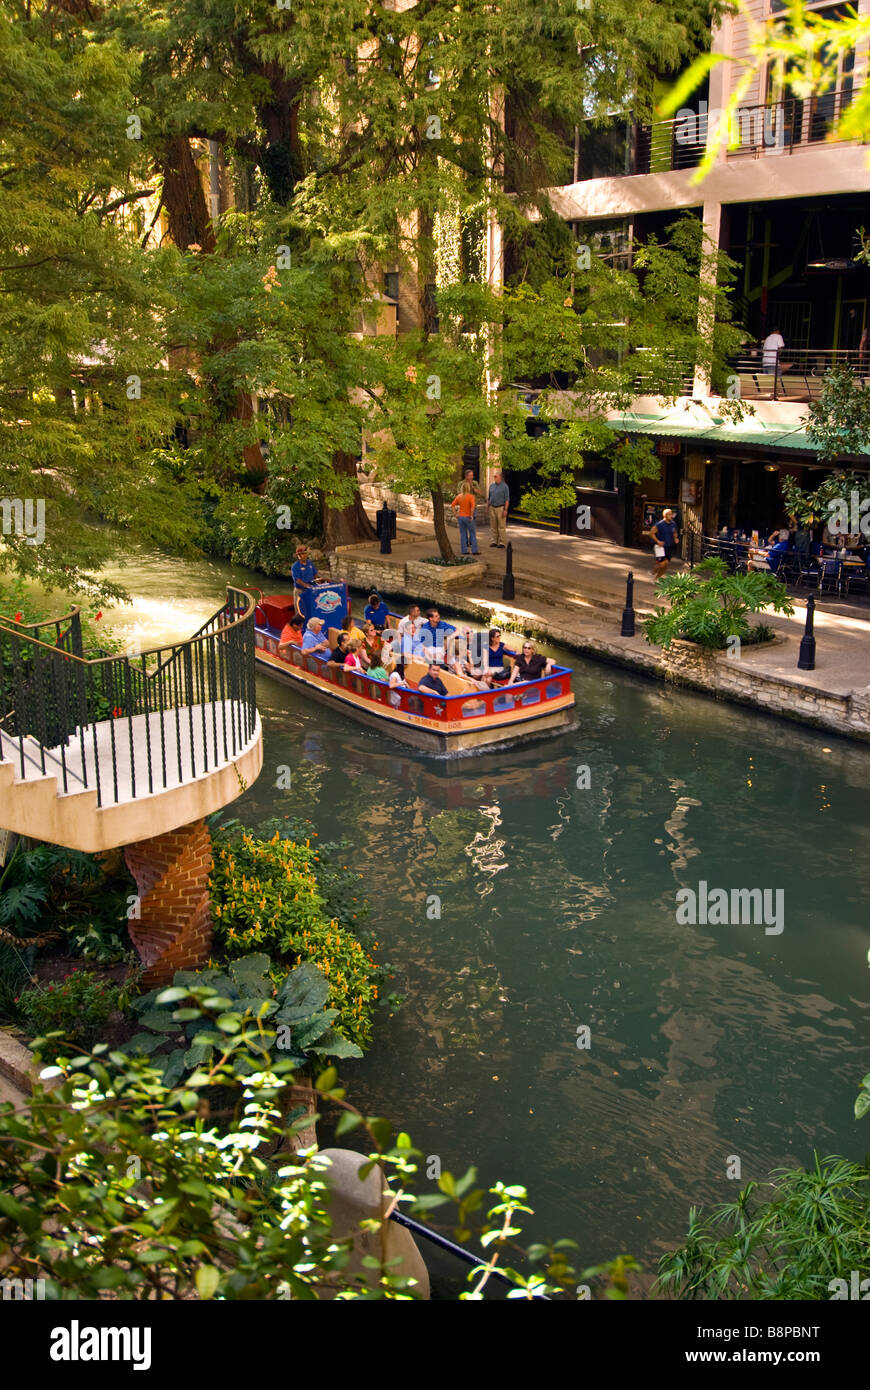 San Antonio River Walk Riverwalk Tourenboot mit Touristen Pässe neben Straßencafés und Bäume mit leuchtend grünen Blättern Stockfoto